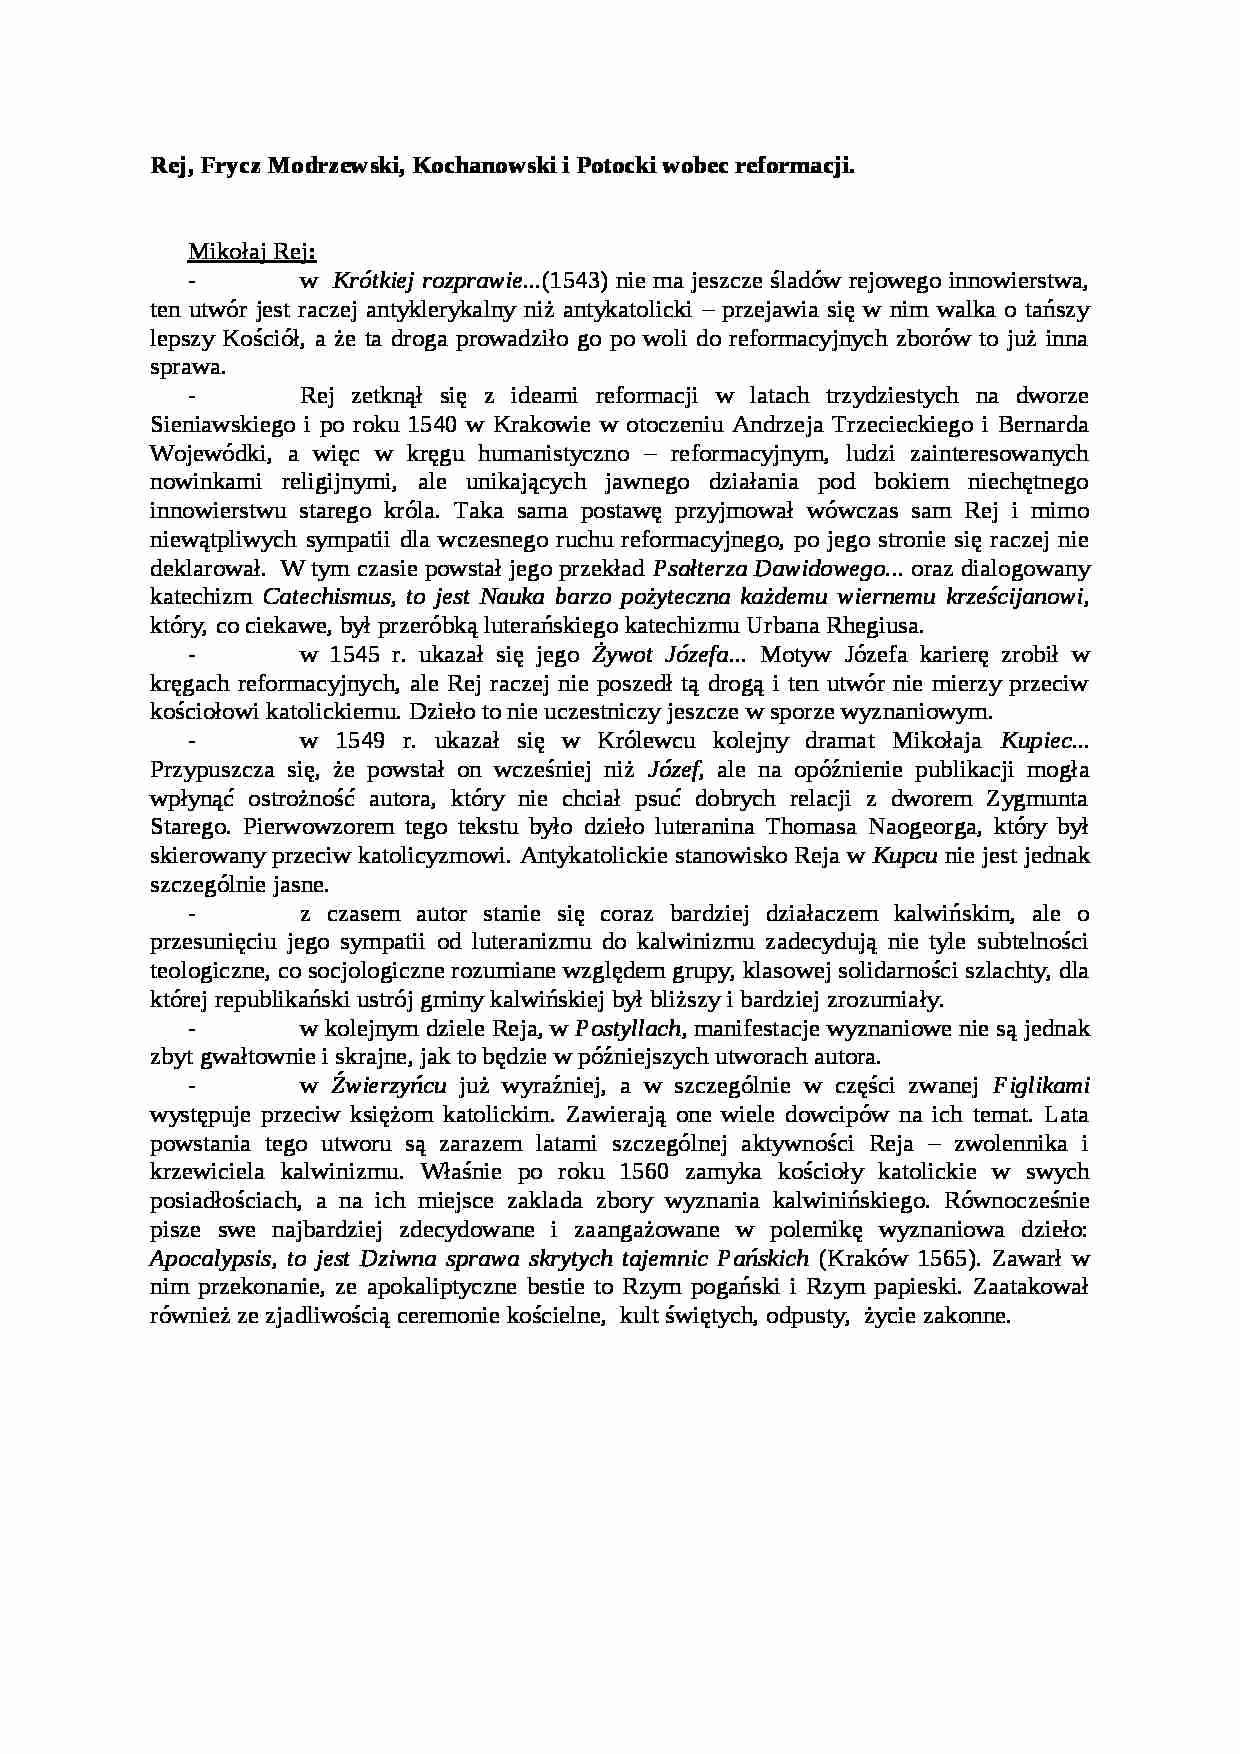 Rej, Frycz Modrzewski, Kochanowski i Potocki wobec reformacji - strona 1